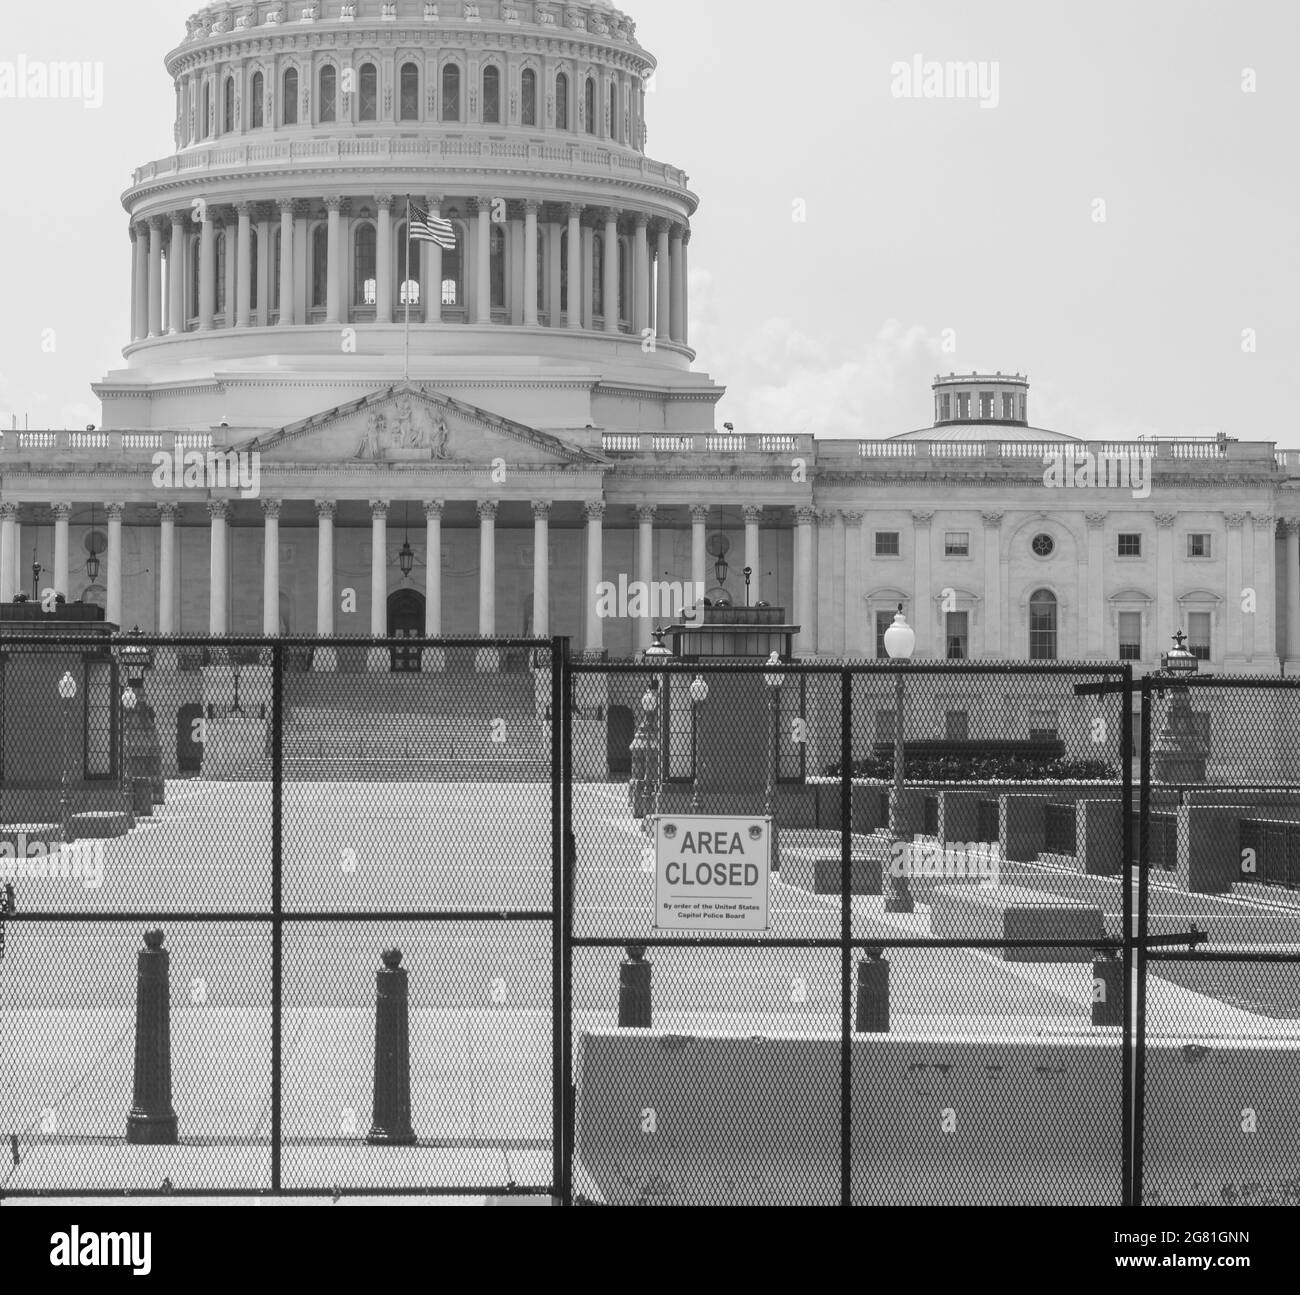 Bâtiment du Capitole des États-Unis - très gardé après les attaques du 6 janvier Banque D'Images